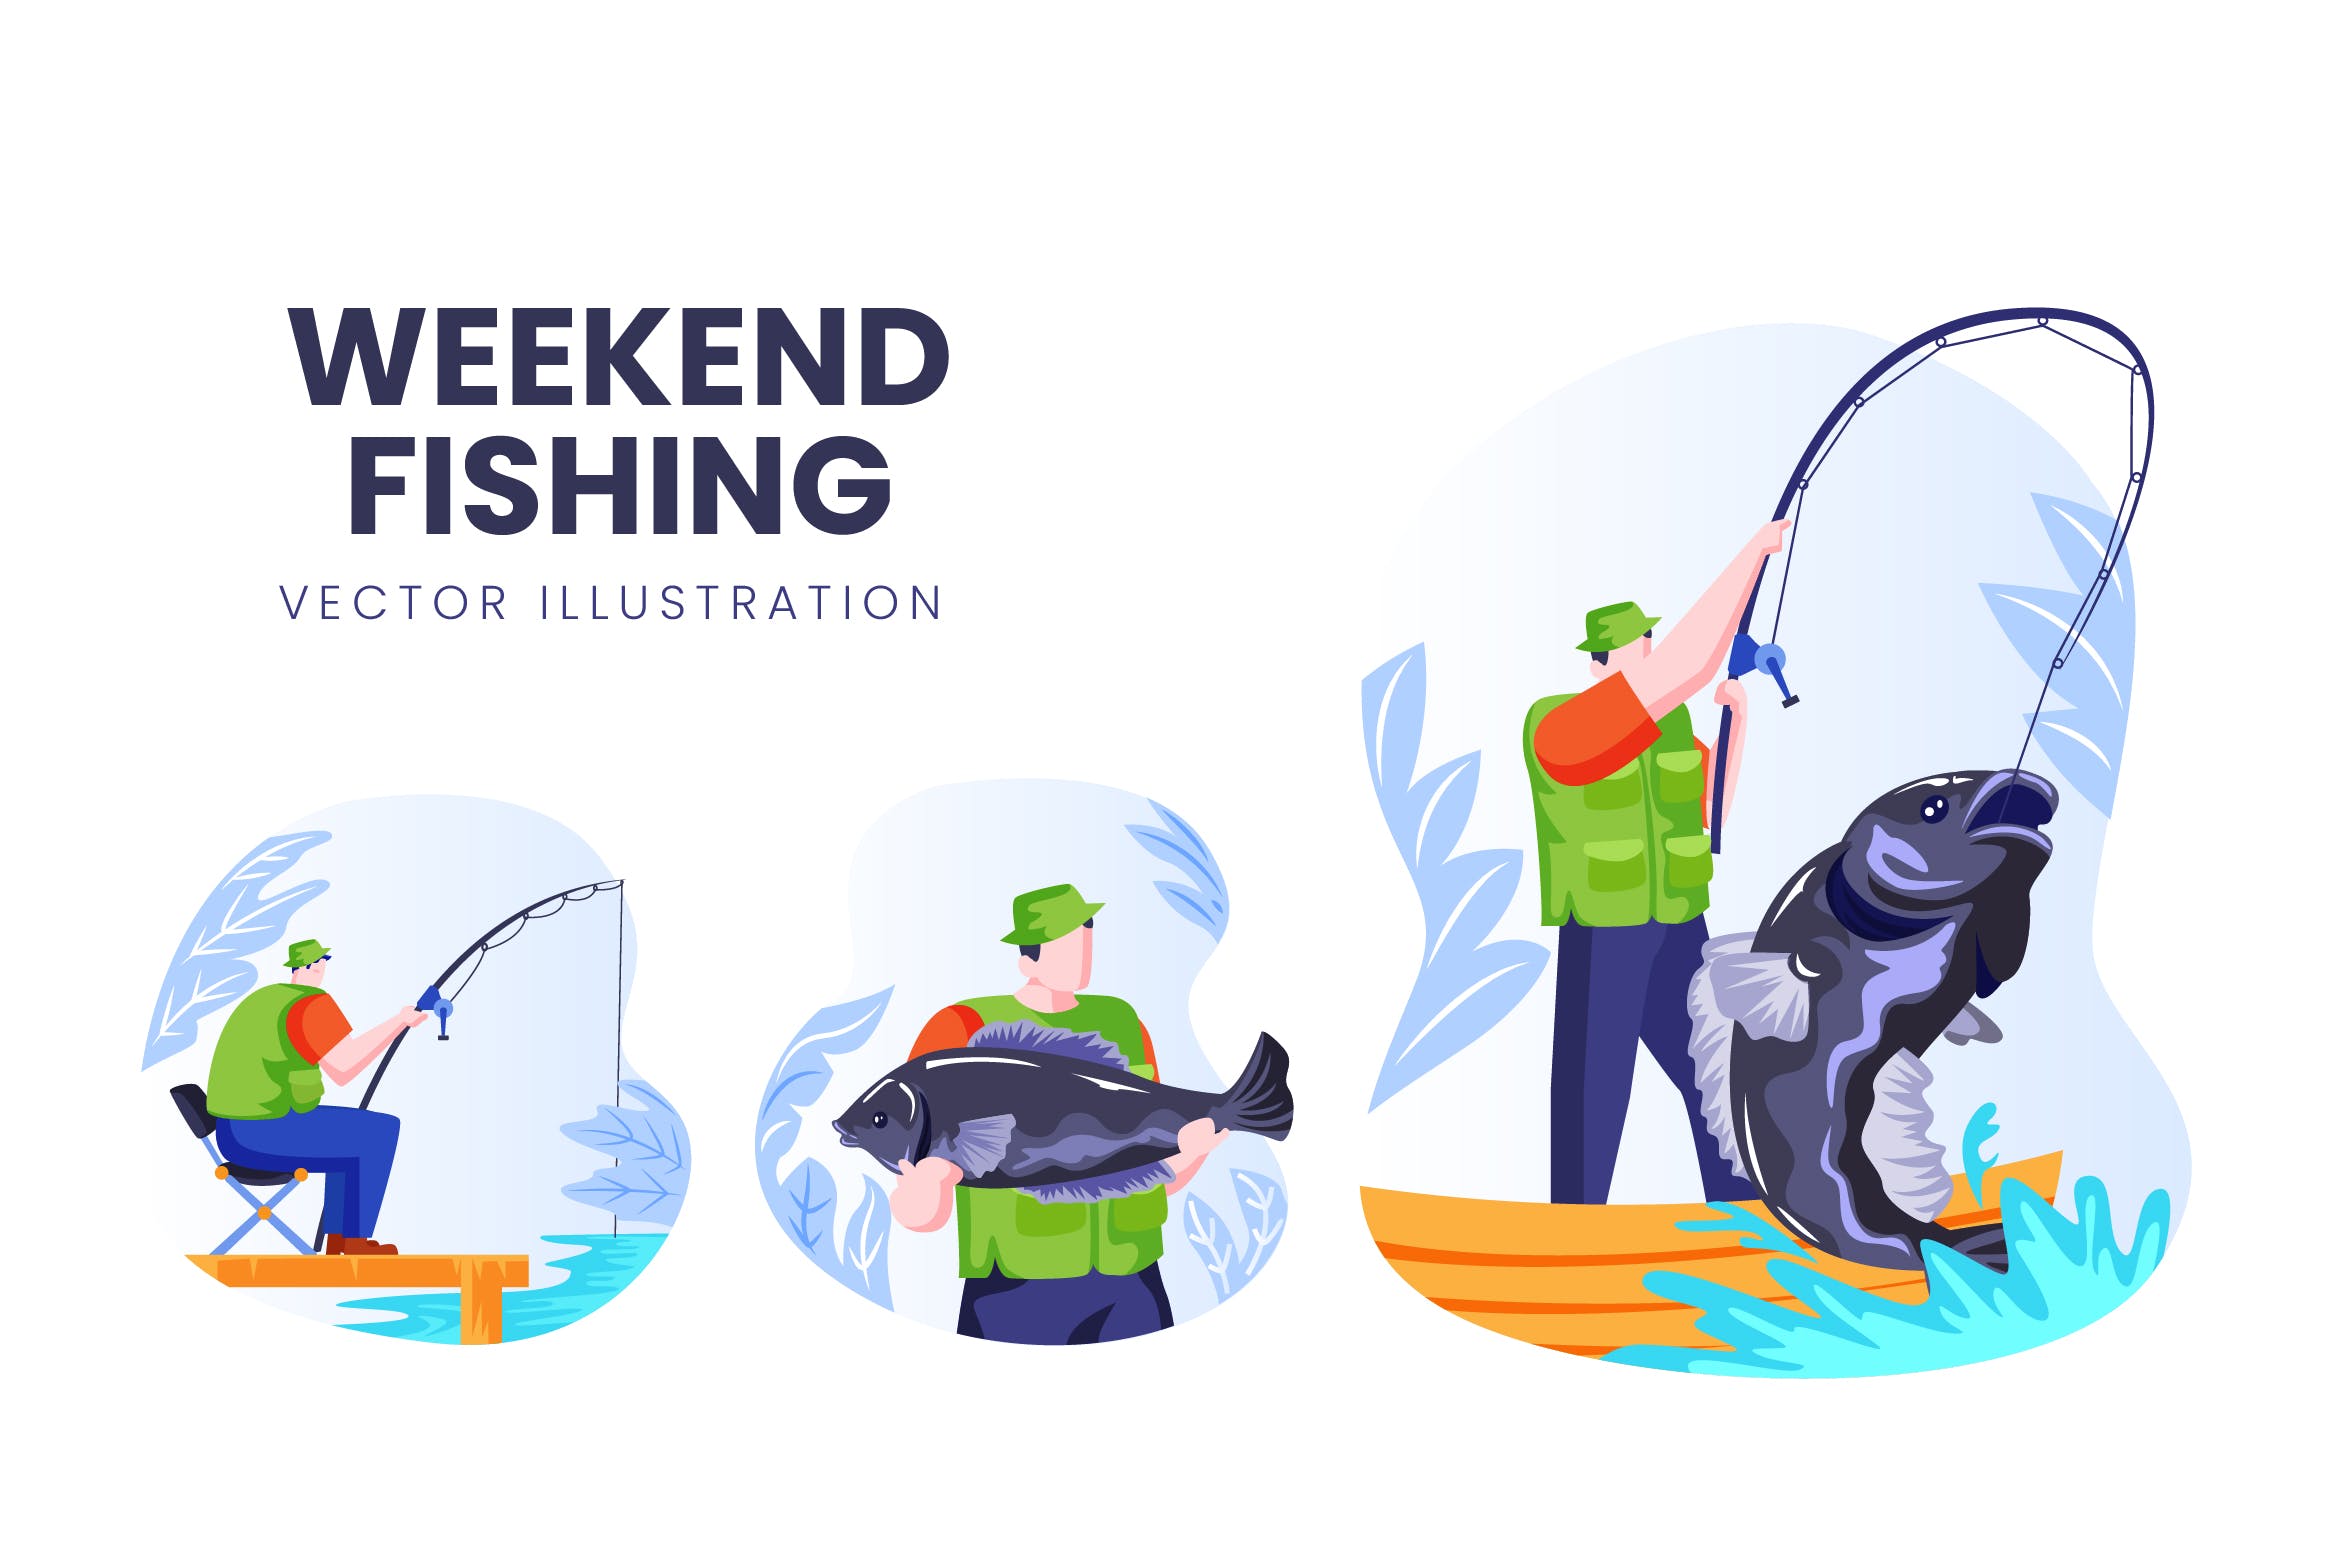 钓鱼爱好者人物形象第一素材精选手绘插画矢量素材 Weekend Fishing Vector Character Set插图